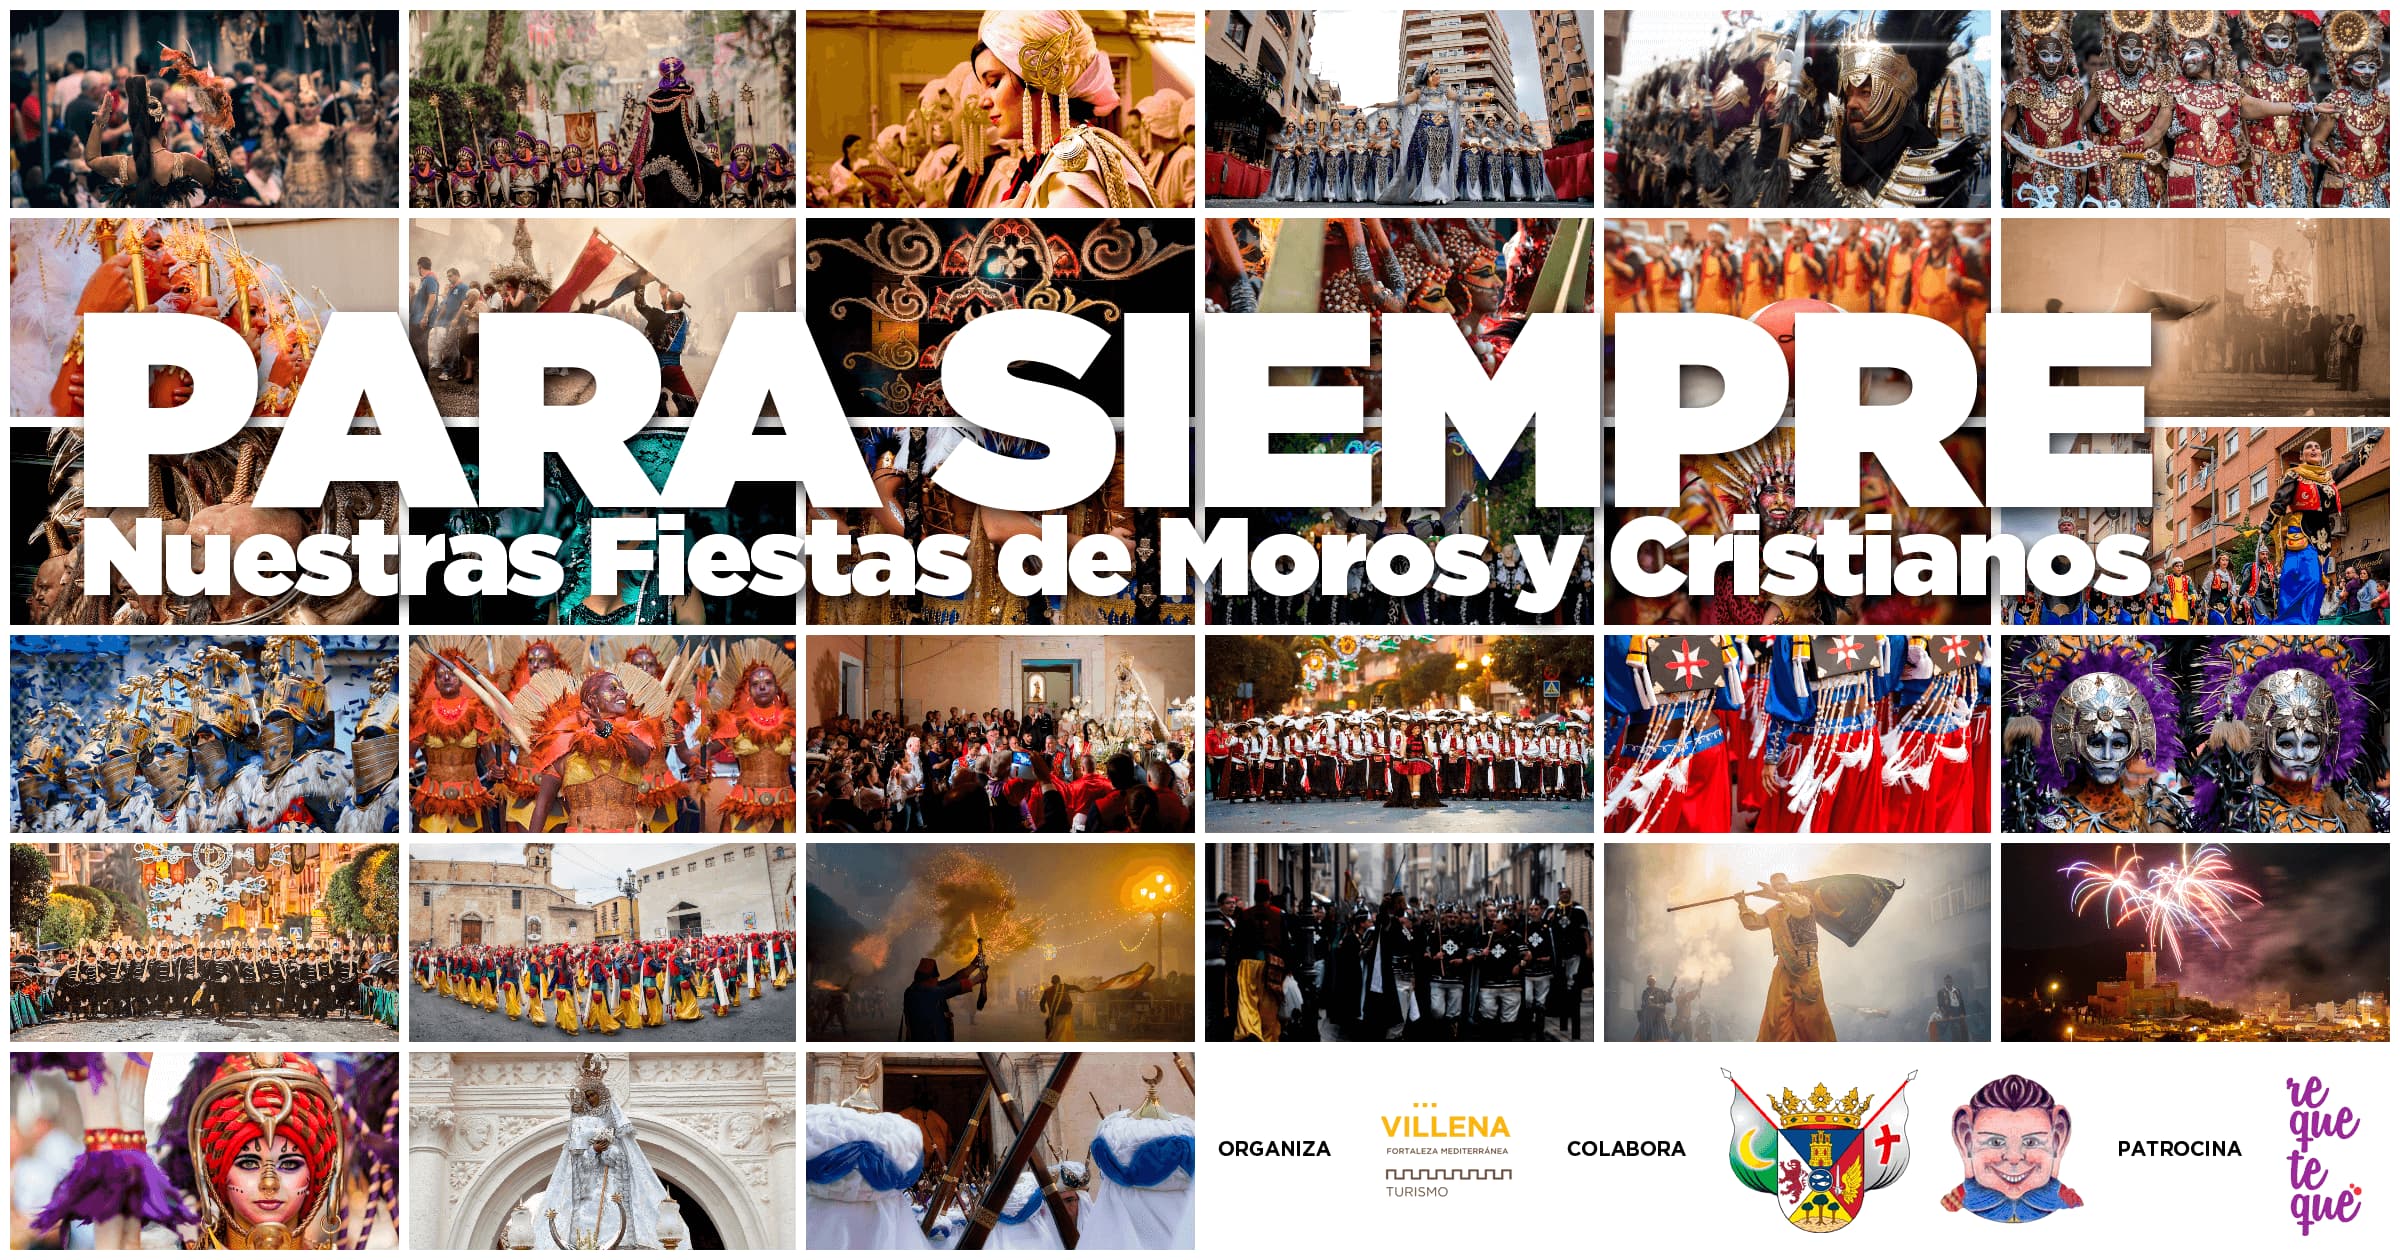 Turismo Villena creará un vídeo recuerdo de nuestras Fiestas de Moros y Cristianos